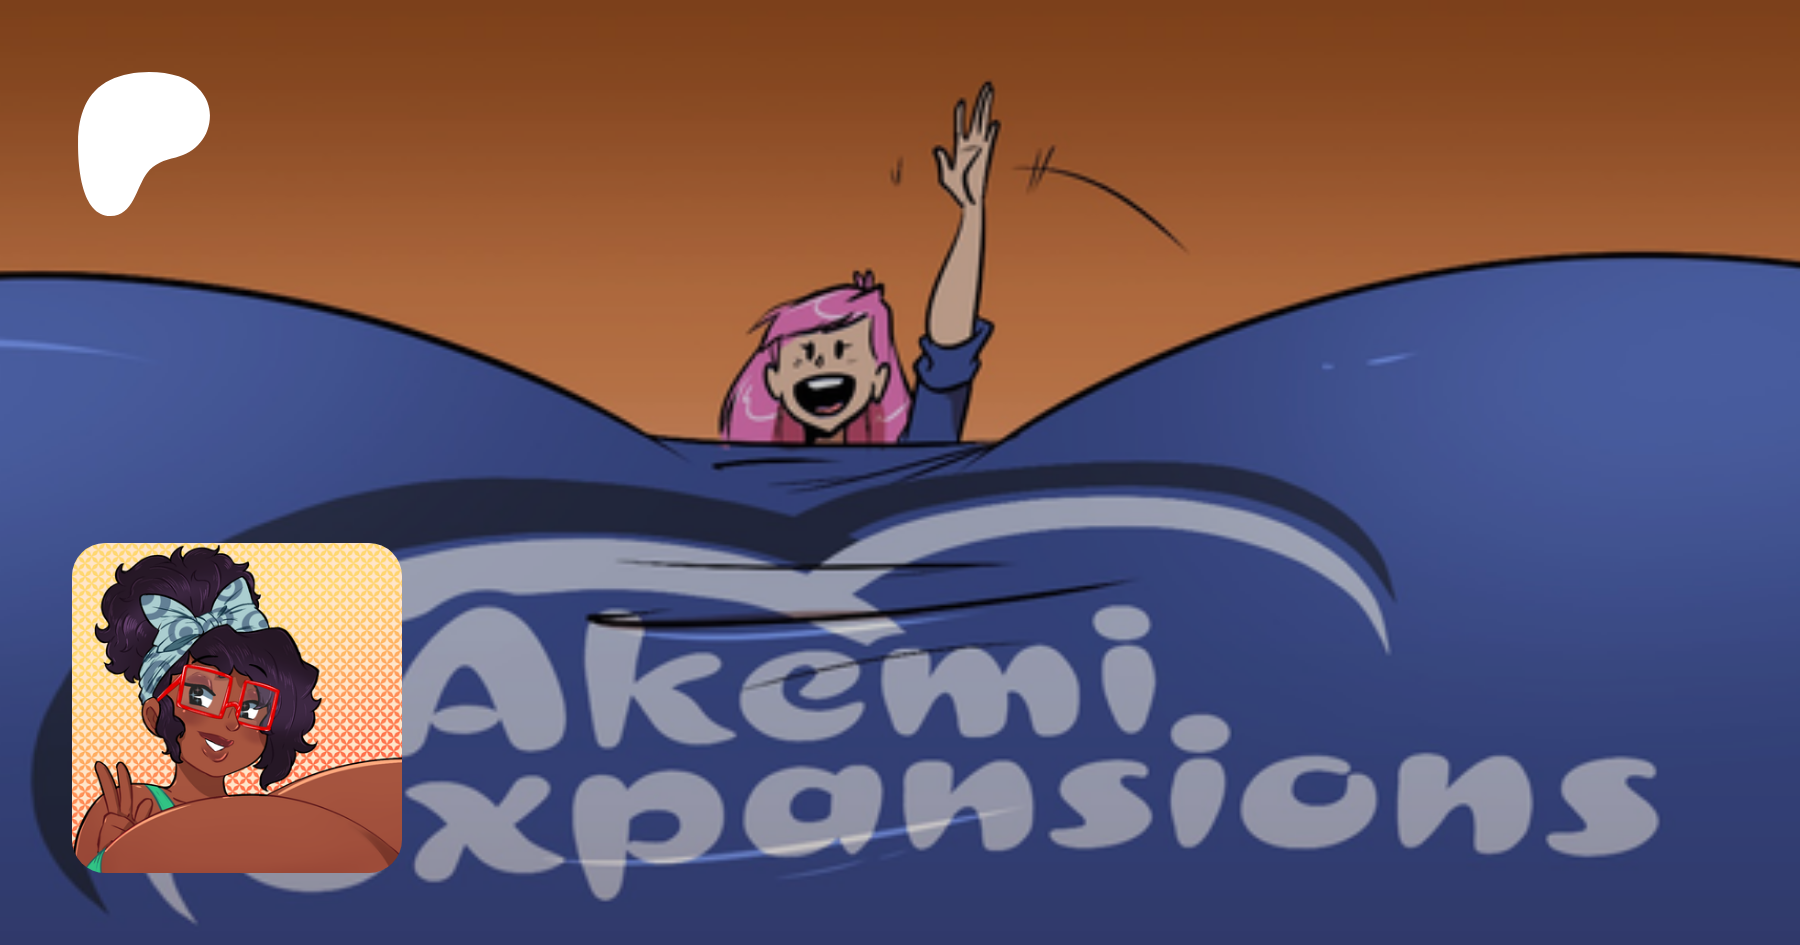 Akemi expansions